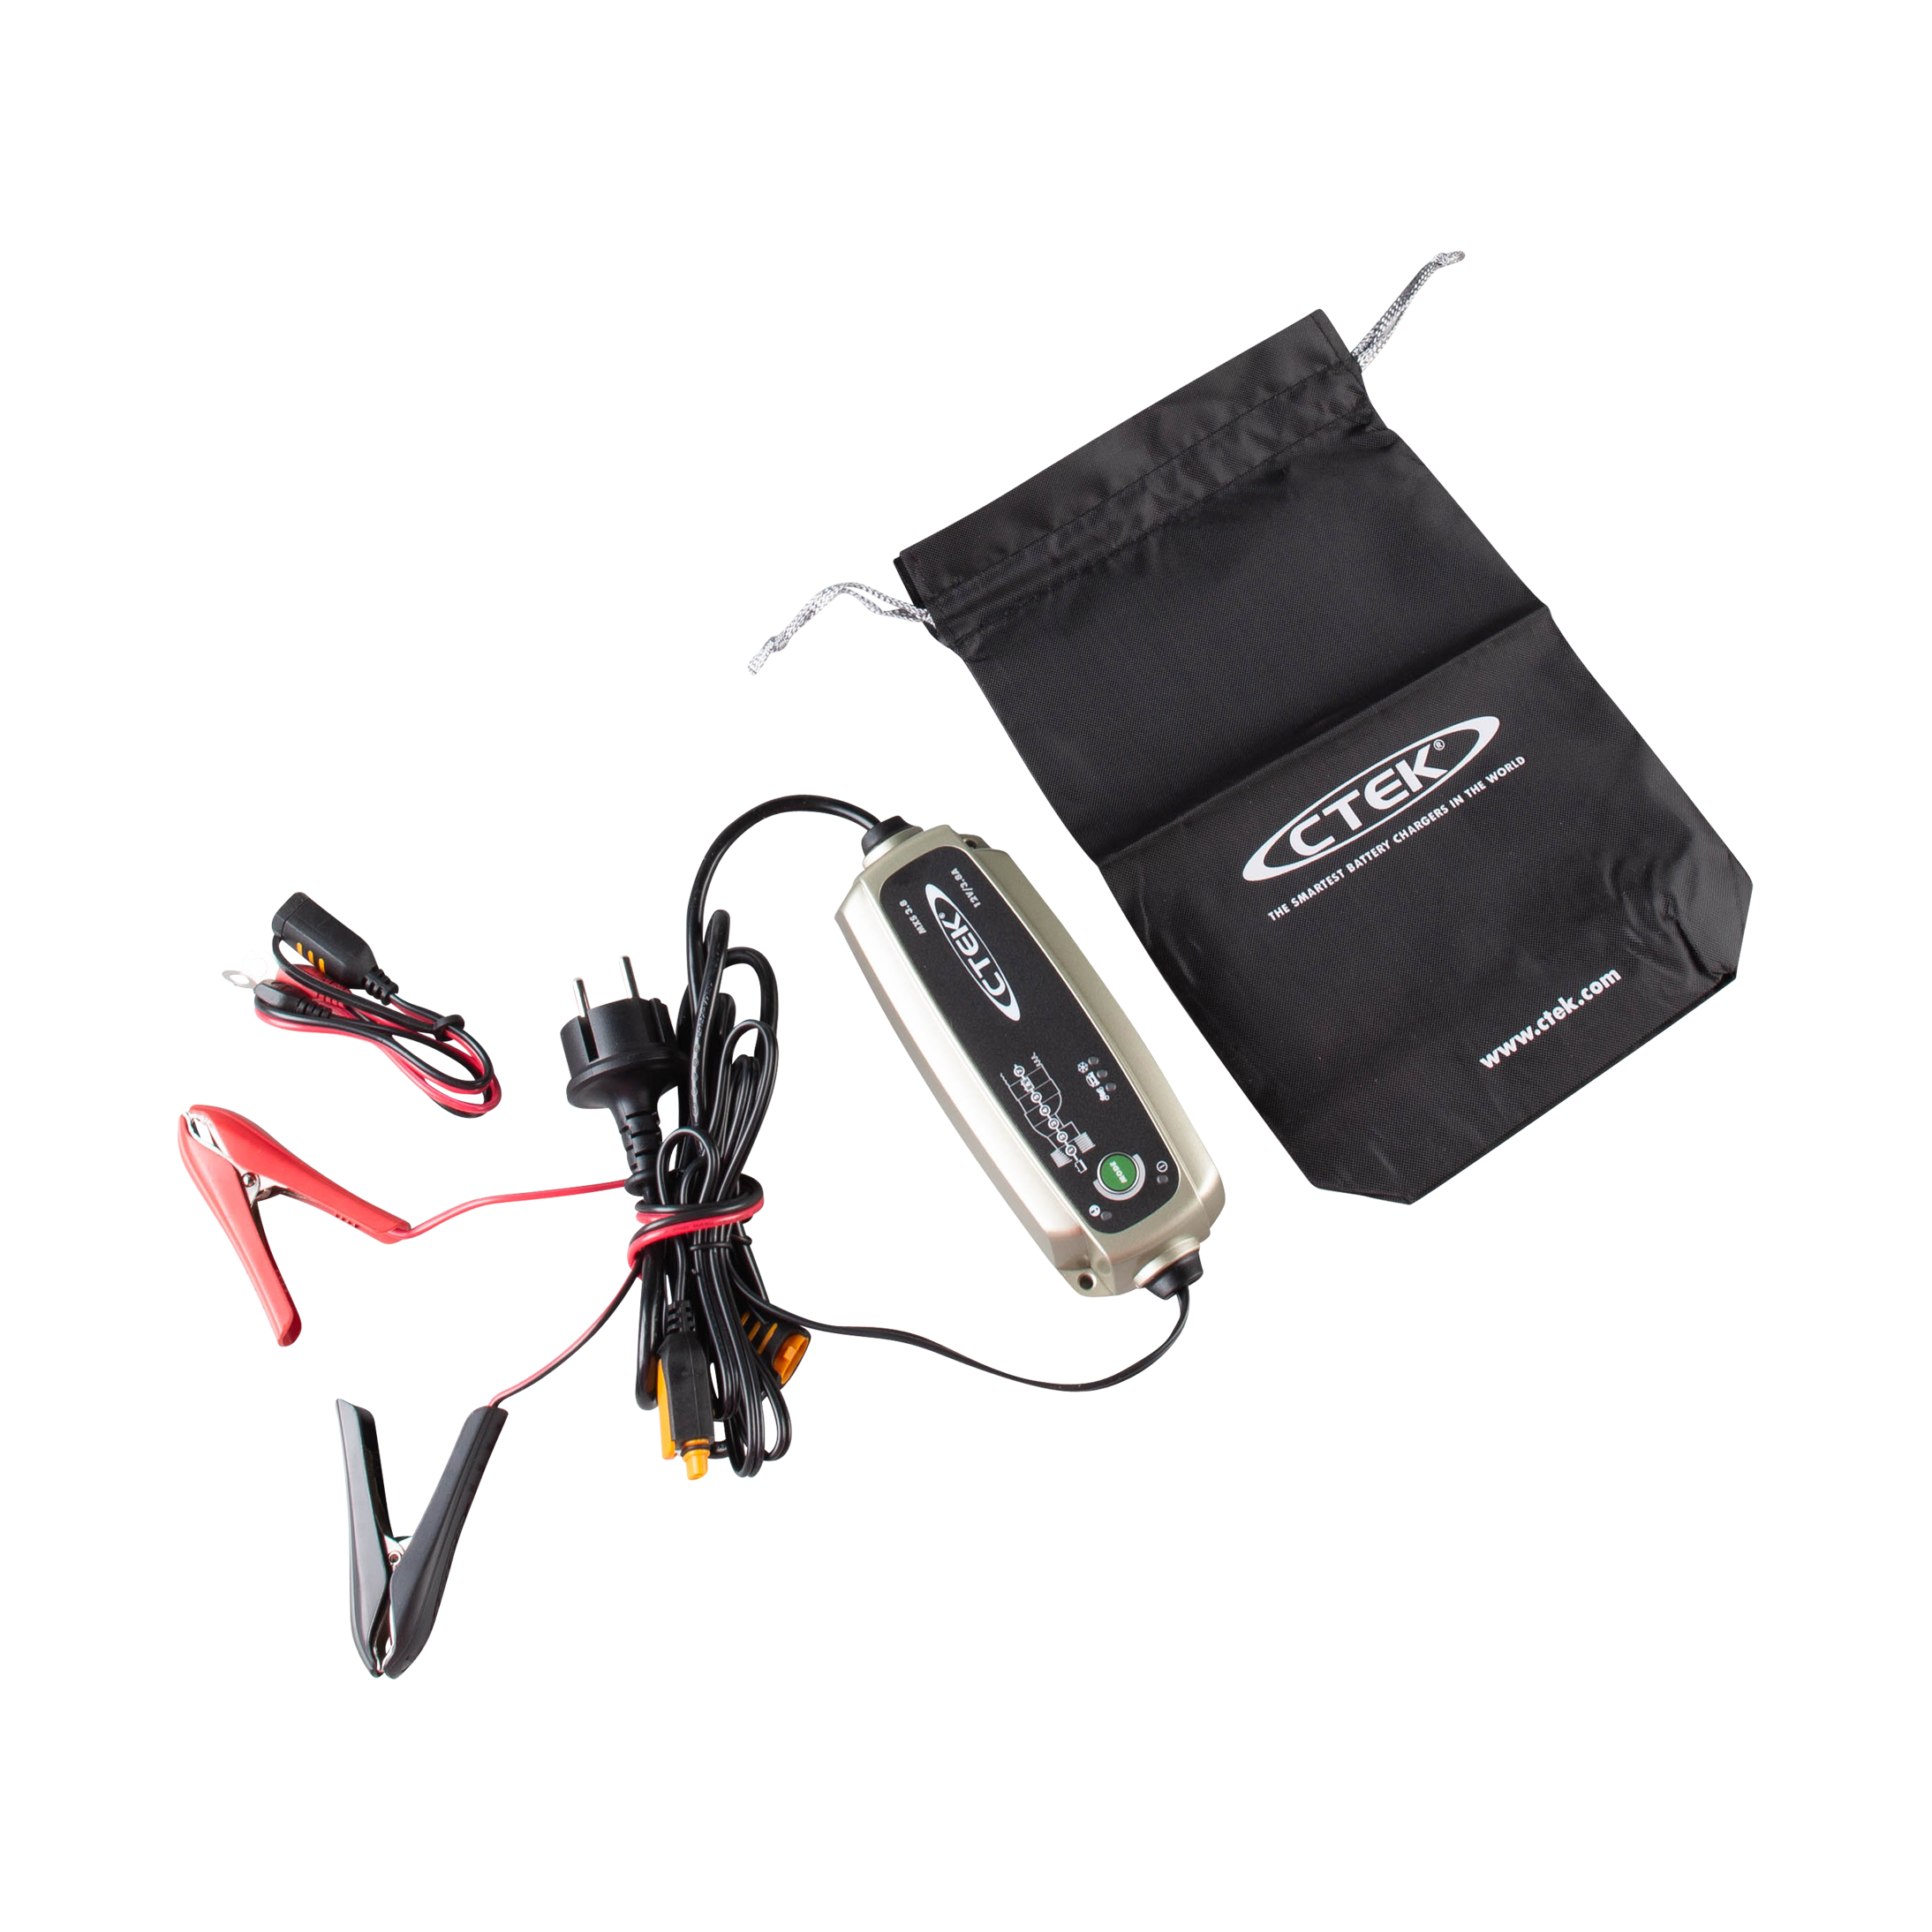 CTEK MXS 3.8 12V automatisches Batterieladegerät - KEEP-YOUR-CAR